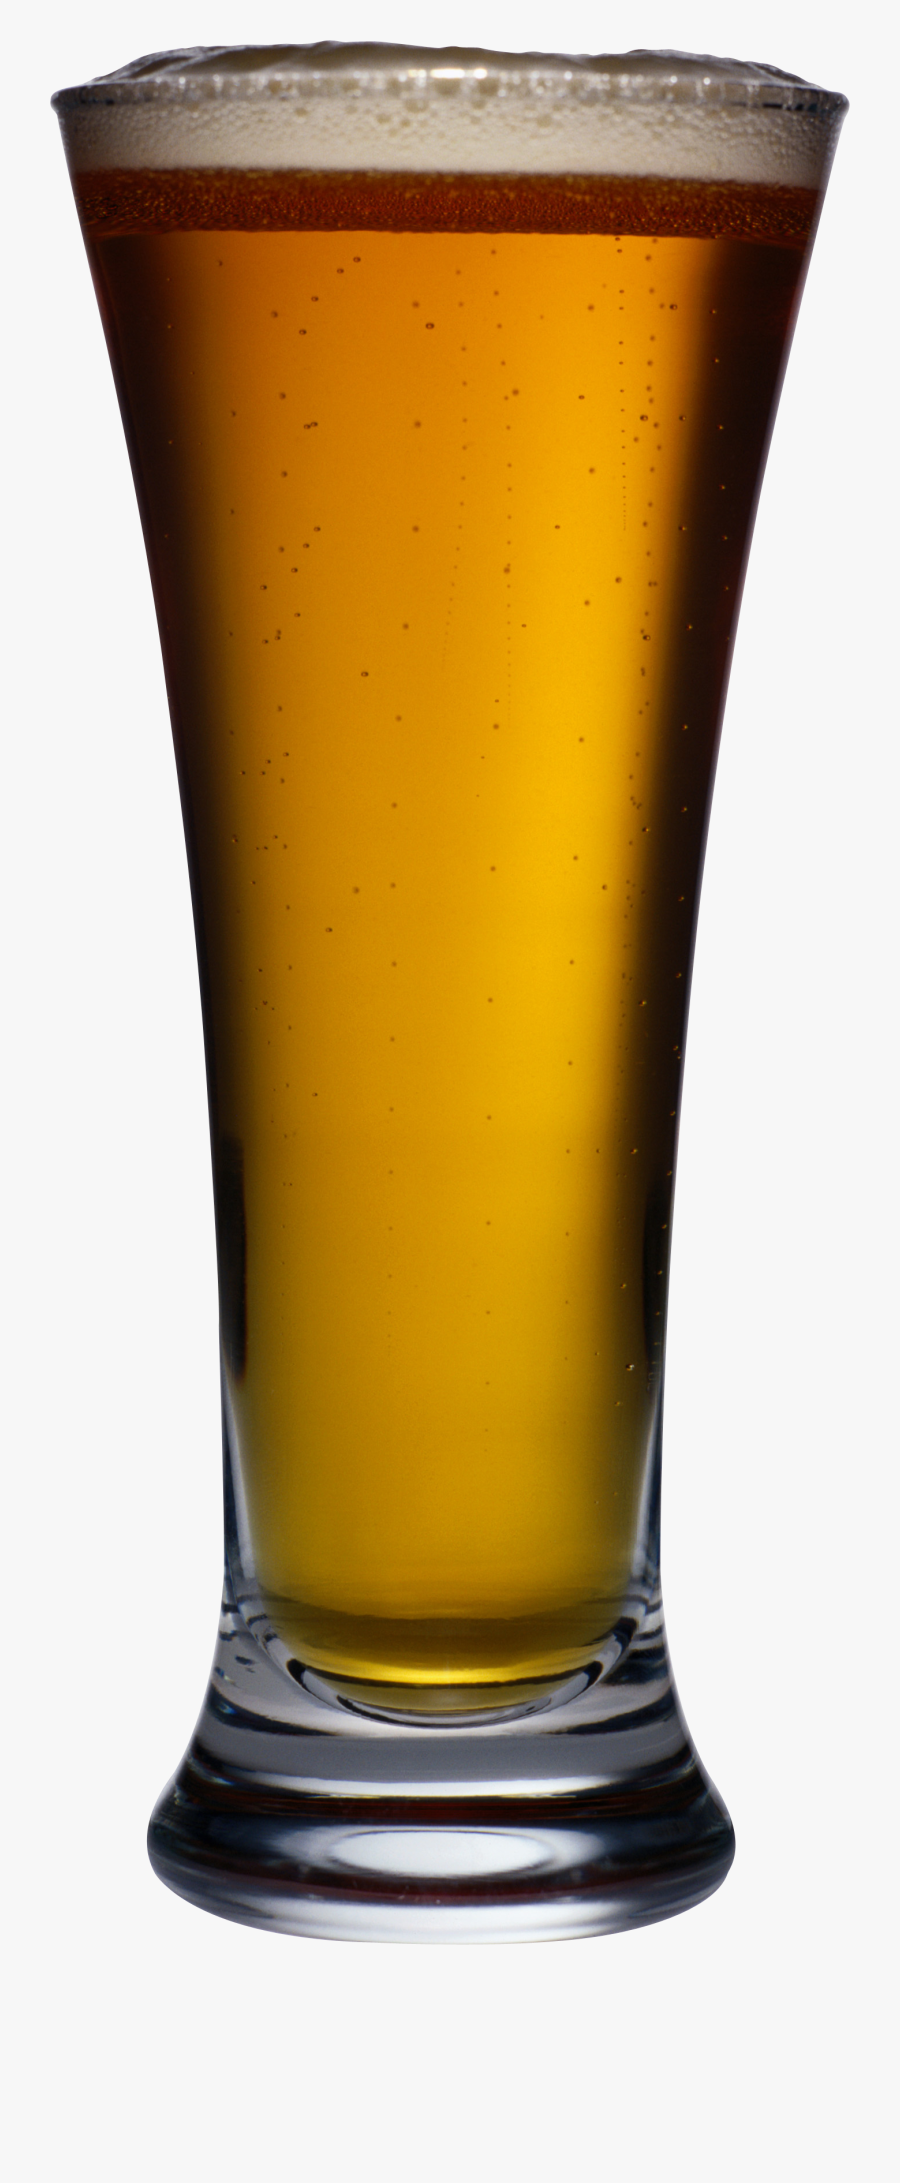 Goblet Beer Png Image - Beer Glass Transparent Background, Transparent Clipart